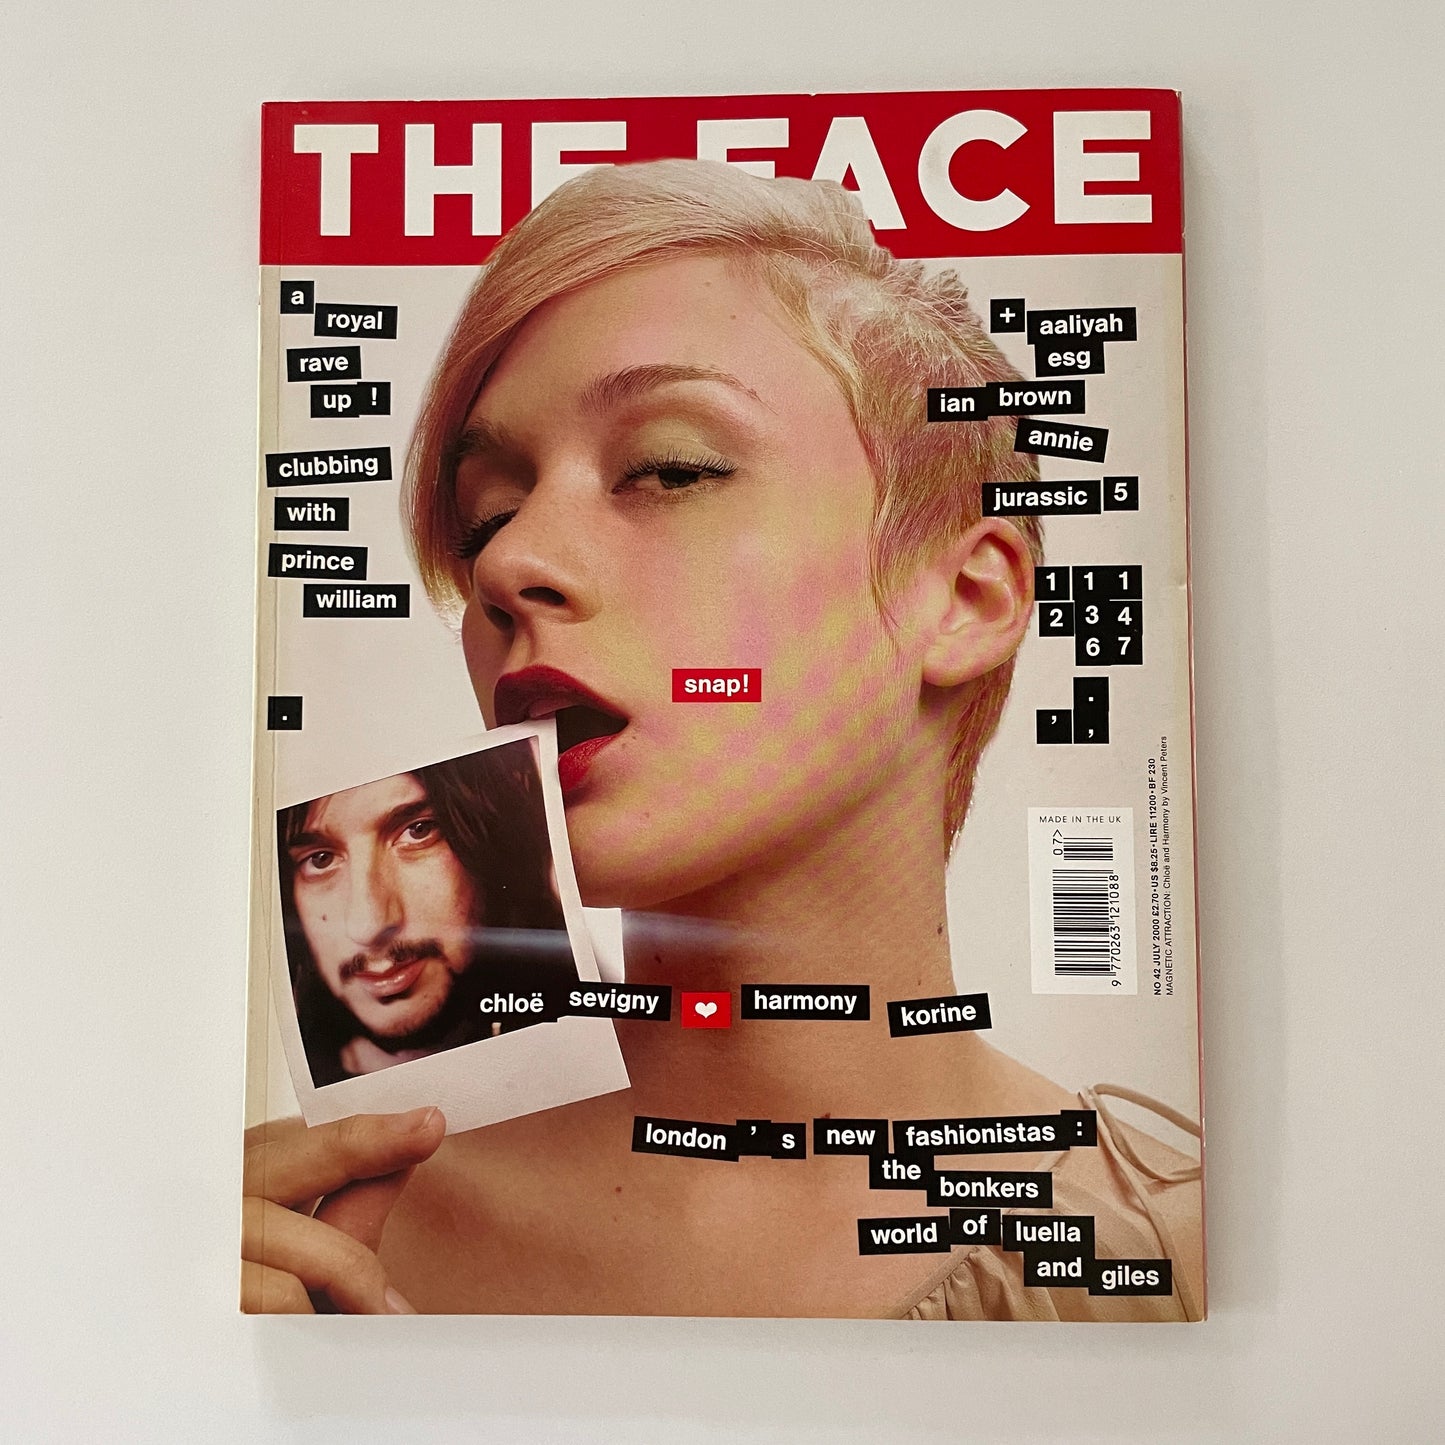 The Face No.42 - July 2000 - Chloe Sevigny